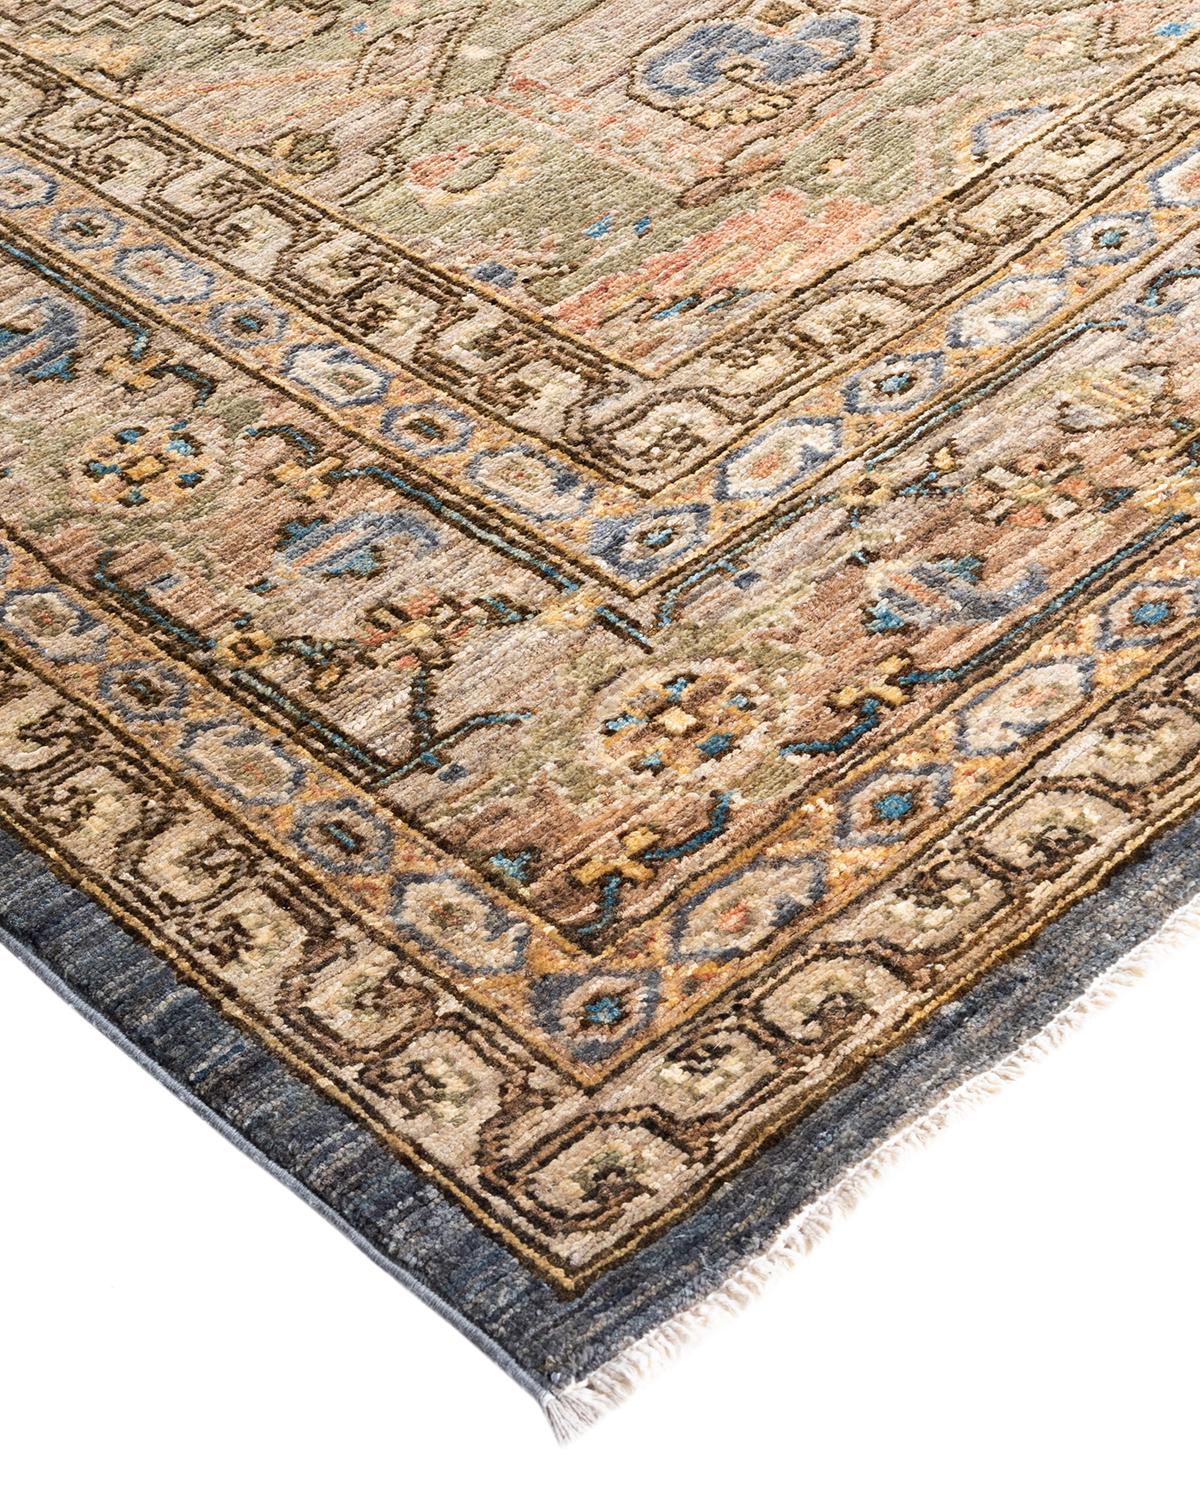 Persische Teppichkunst vom Feinsten inspirierte zu den satten Farben, den kunstvollen geometrischen Motiven und den botanischen Details der Serapi Collection. Mit bis zu 100 Knoten pro Zentimeter sind diese handgefertigten Teppiche ebenso langlebig